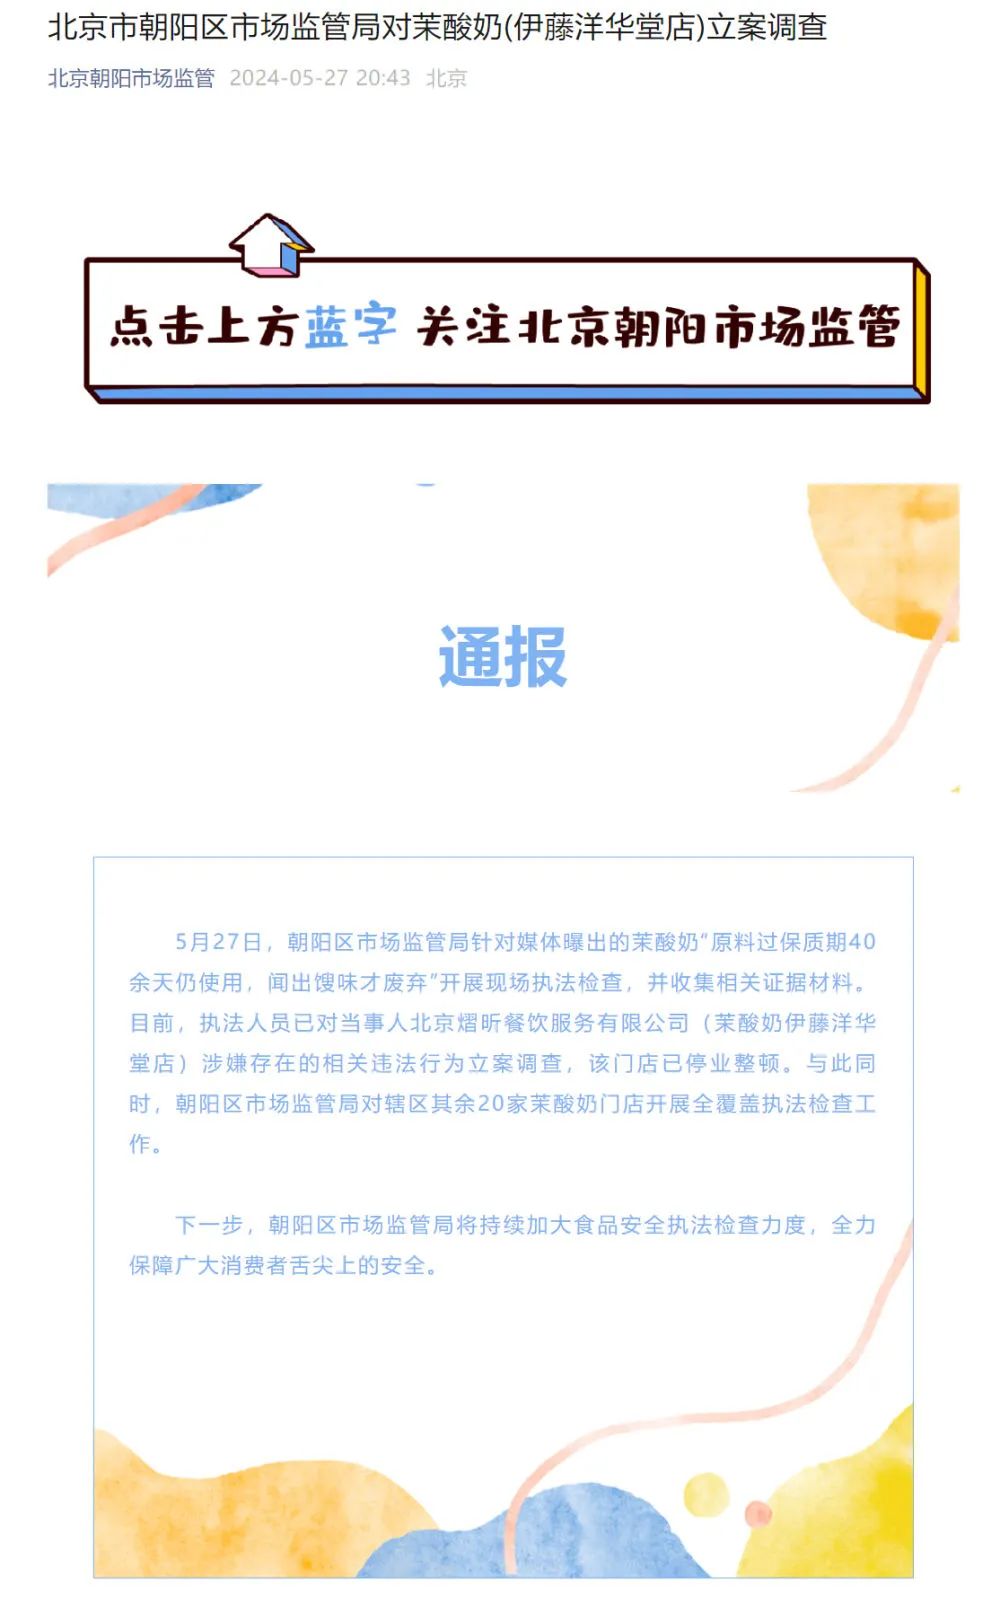 北京市朝阳区市场监管局对茉酸奶伊藤洋华堂店立案调查